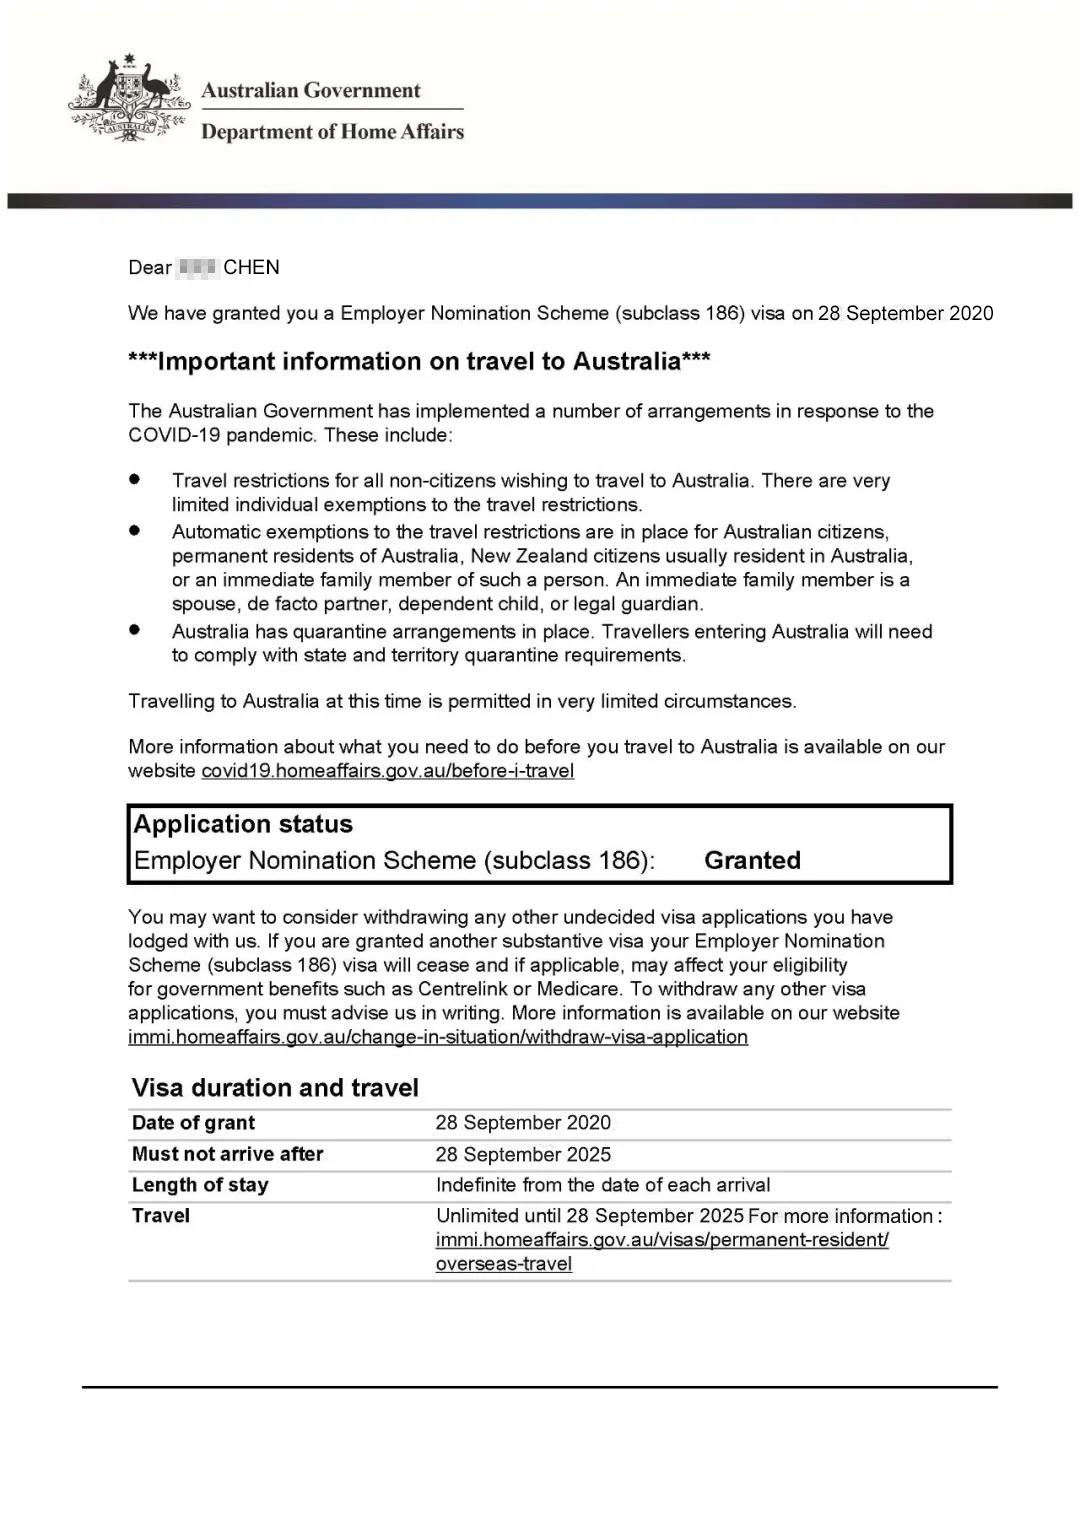 澳大利亚186雇主担保移民项目下签信